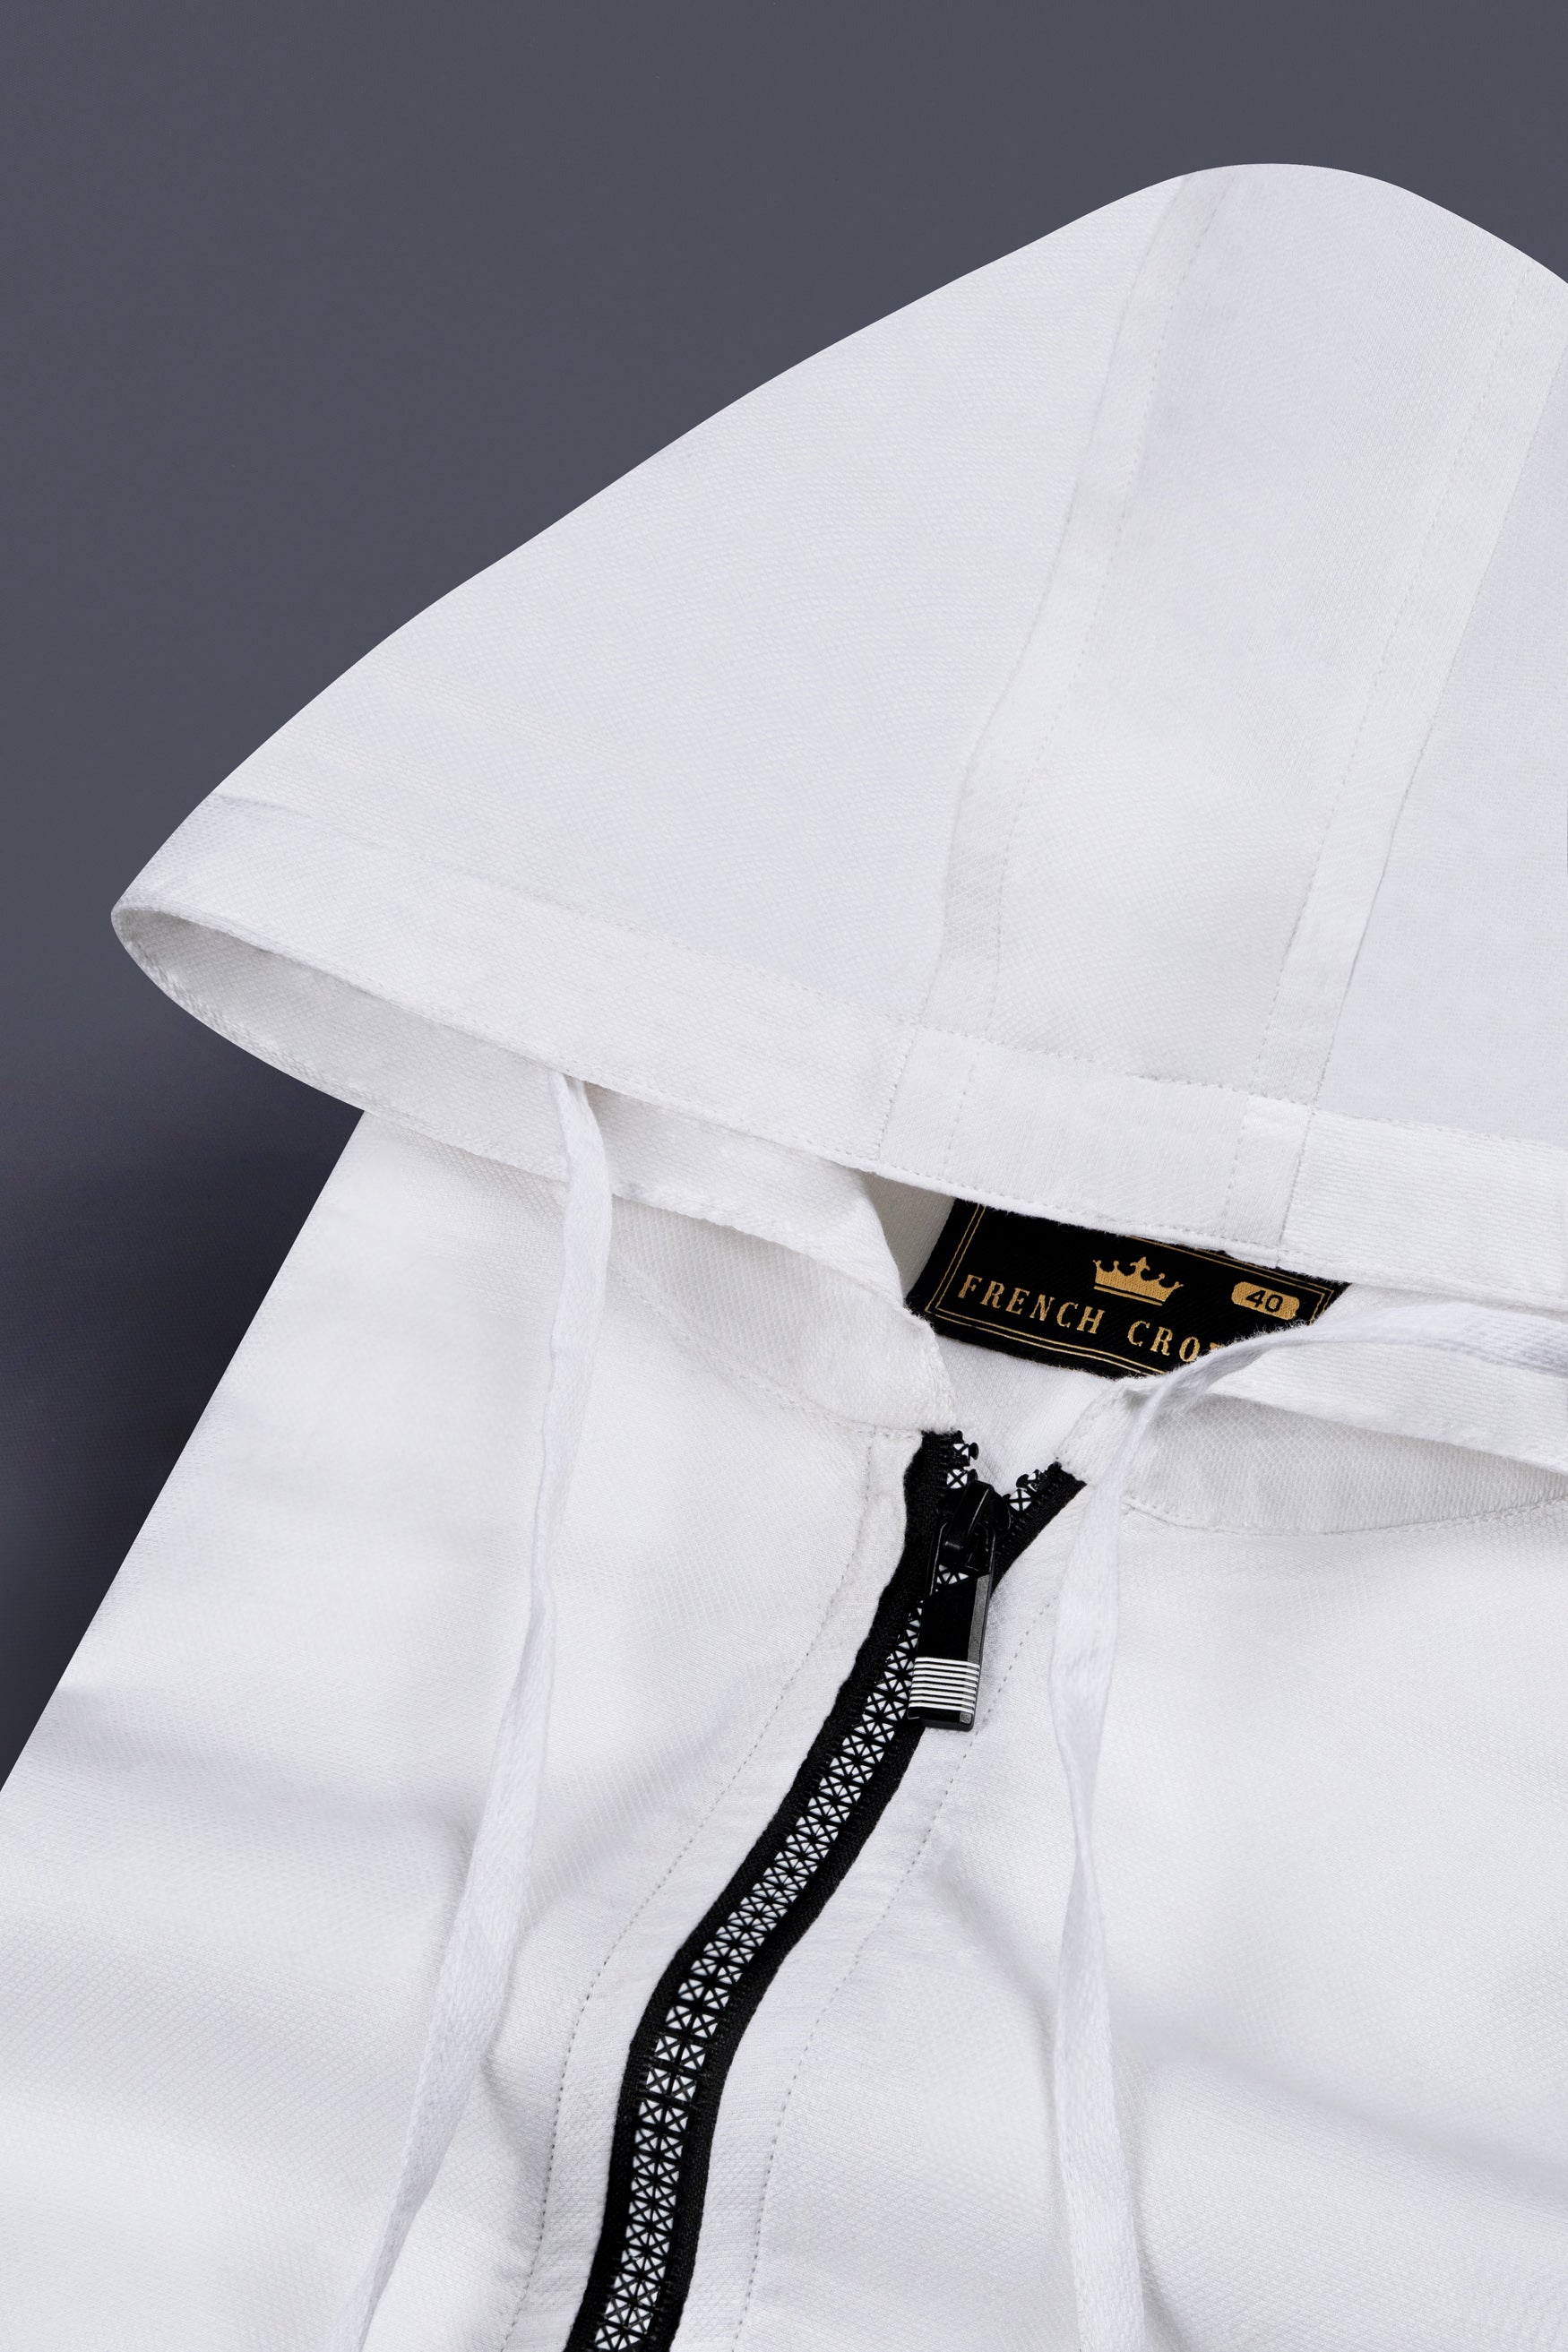 Bright White Dobby Zipper Closure with Hoodie Designer Shirt